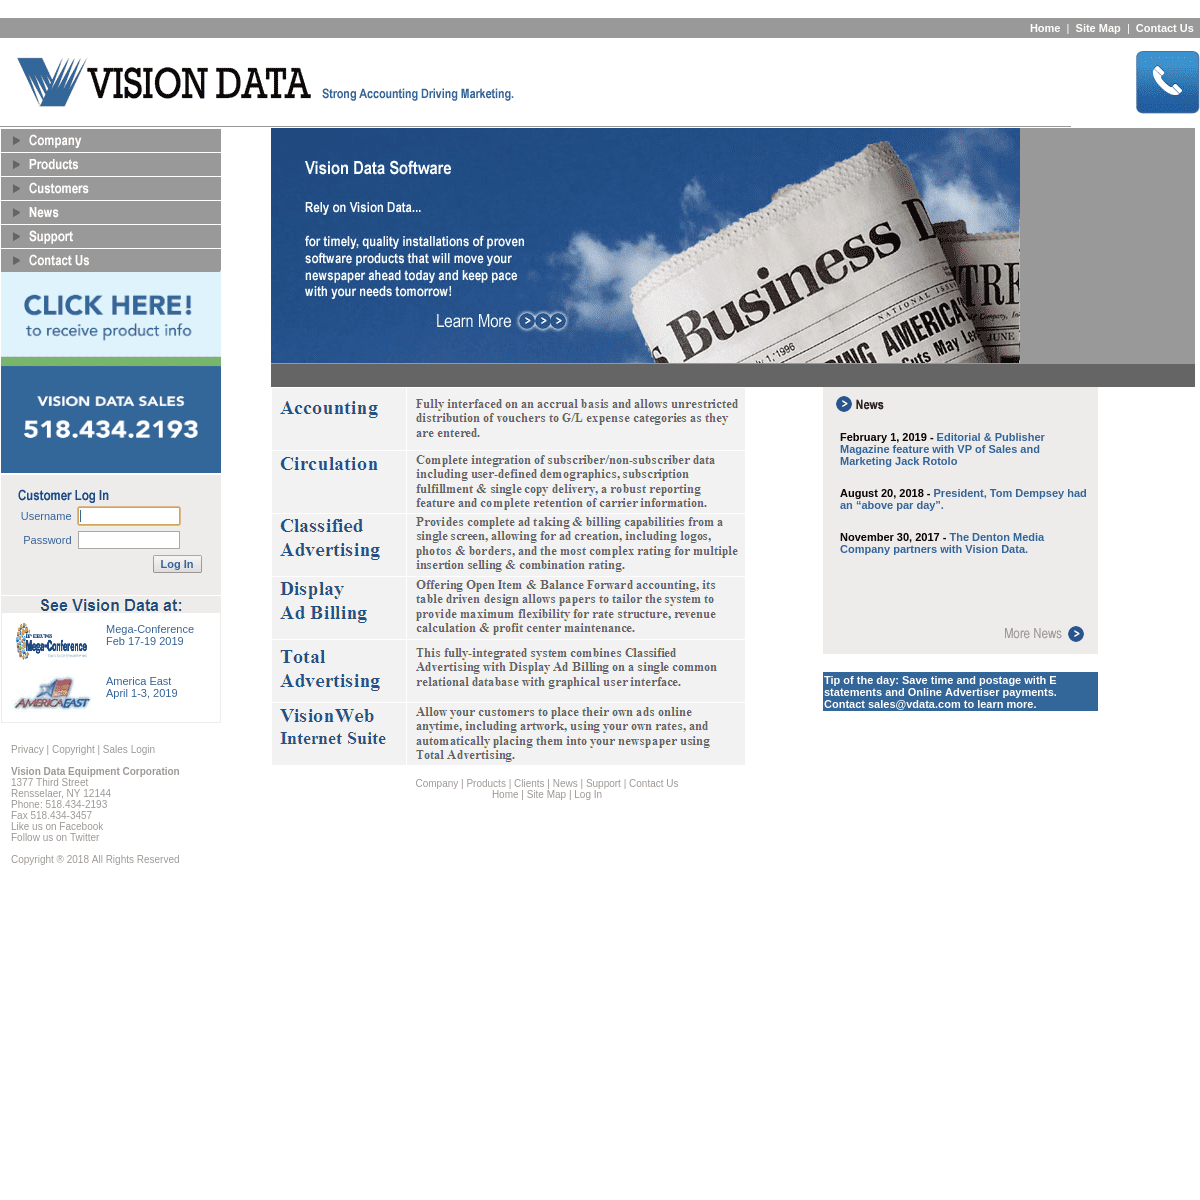 A complete backup of vdata.com